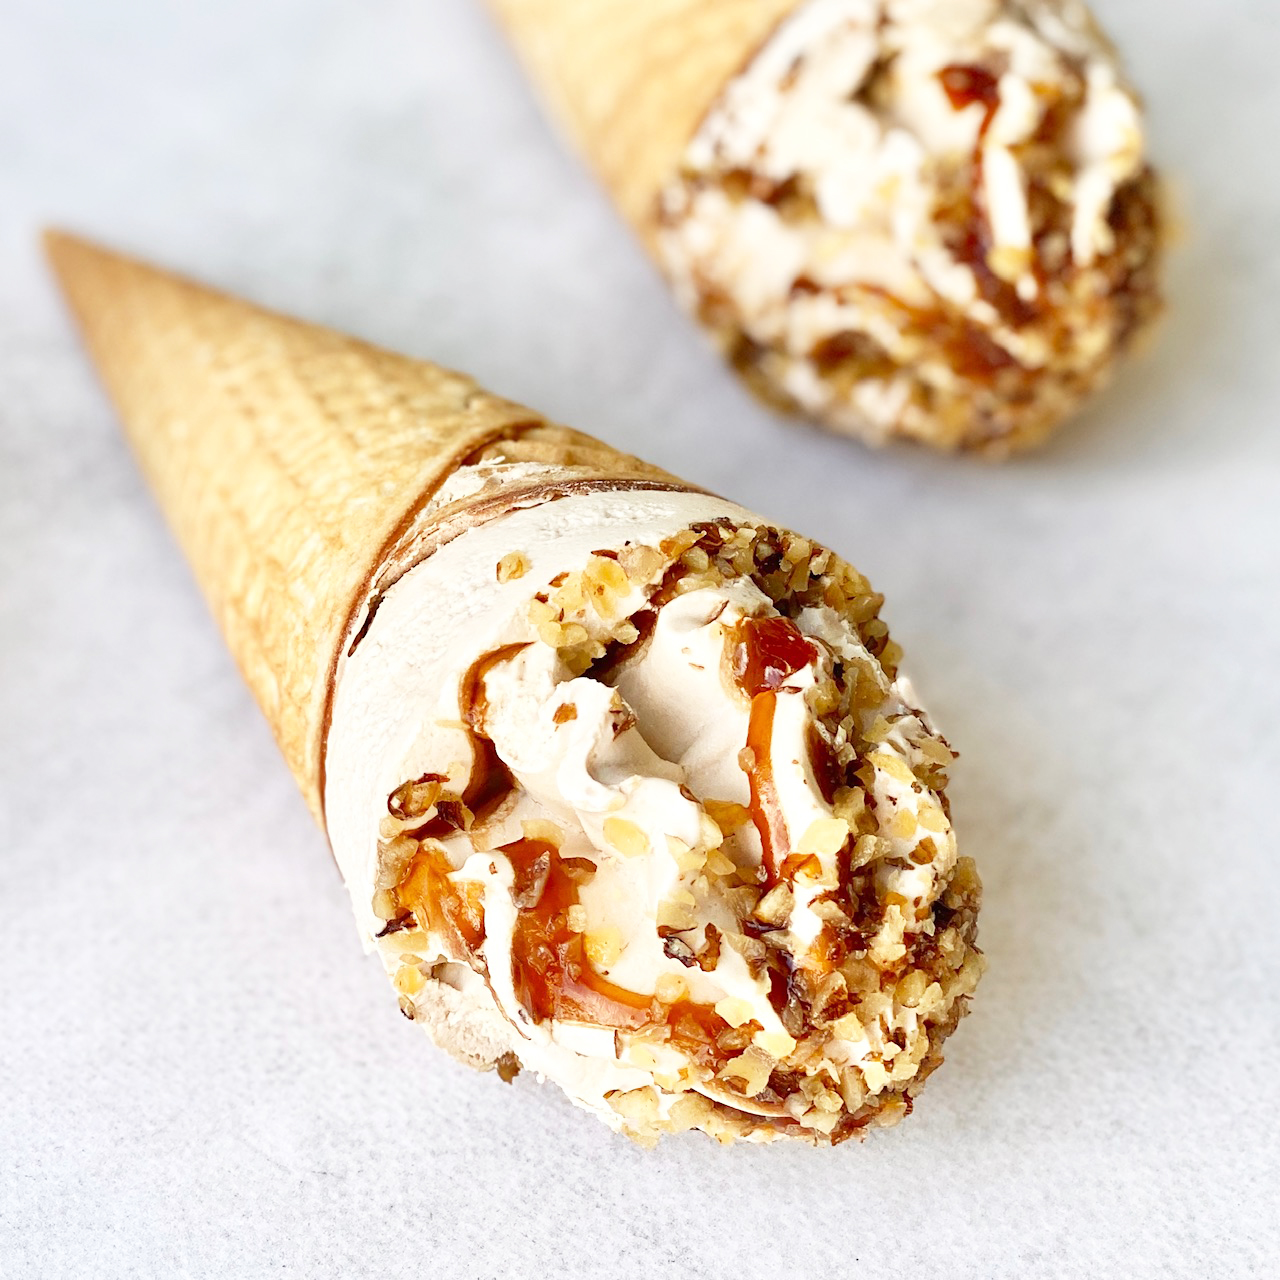 Мороженое сливочное с ароматом грецкого ореха, декорированное кленовым сиропом и грецким орехом в сахарном вафельном рожке с шоколадной глазурью изображение 1